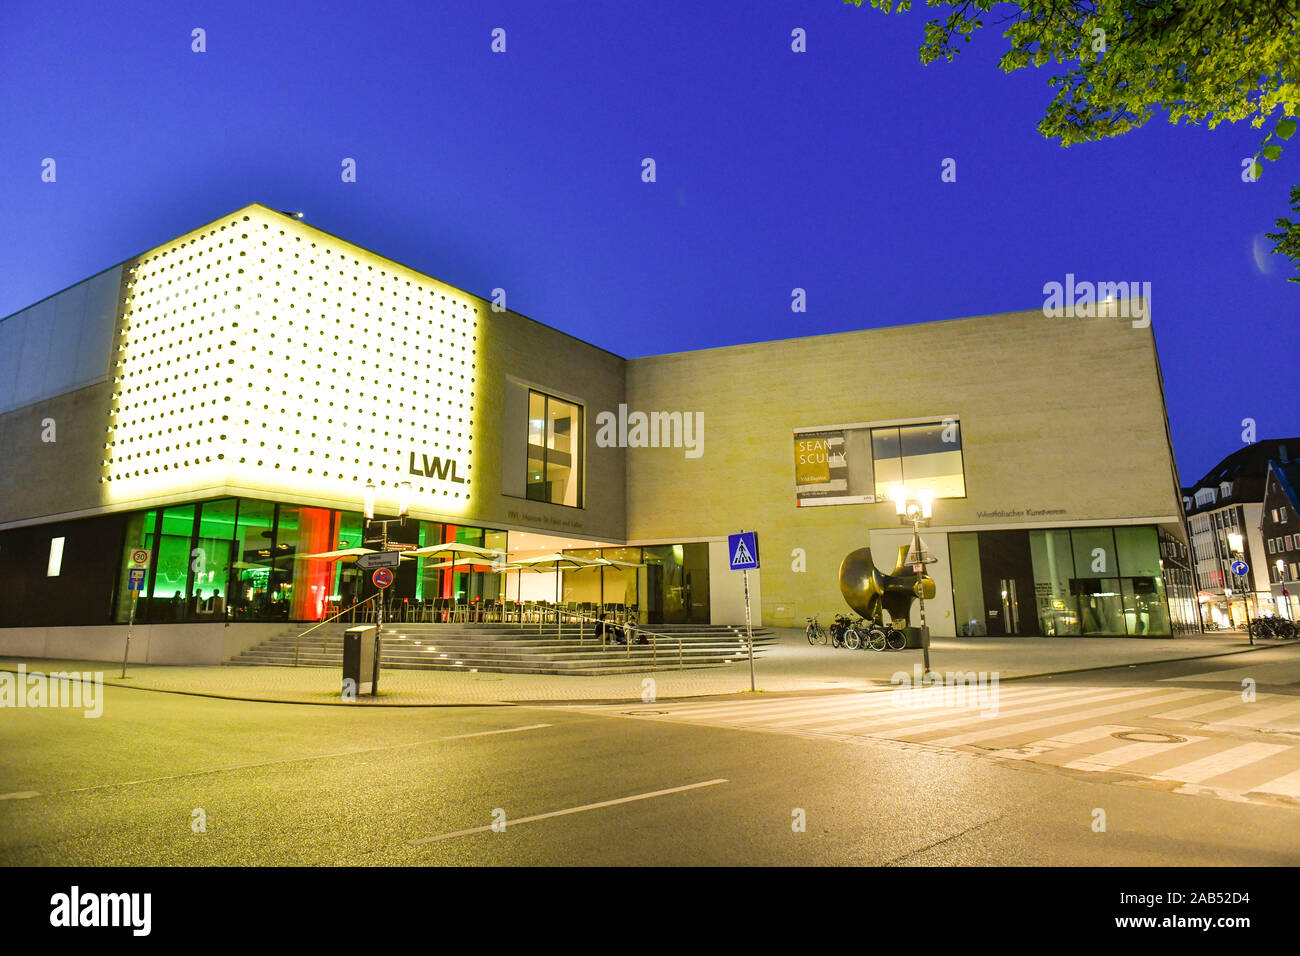 LWL-Museum für Kunst und Kultur, Rothenburg, Pferdegasse, Münster, Nordrhein-Westfalen, Deutschland Stock Photo